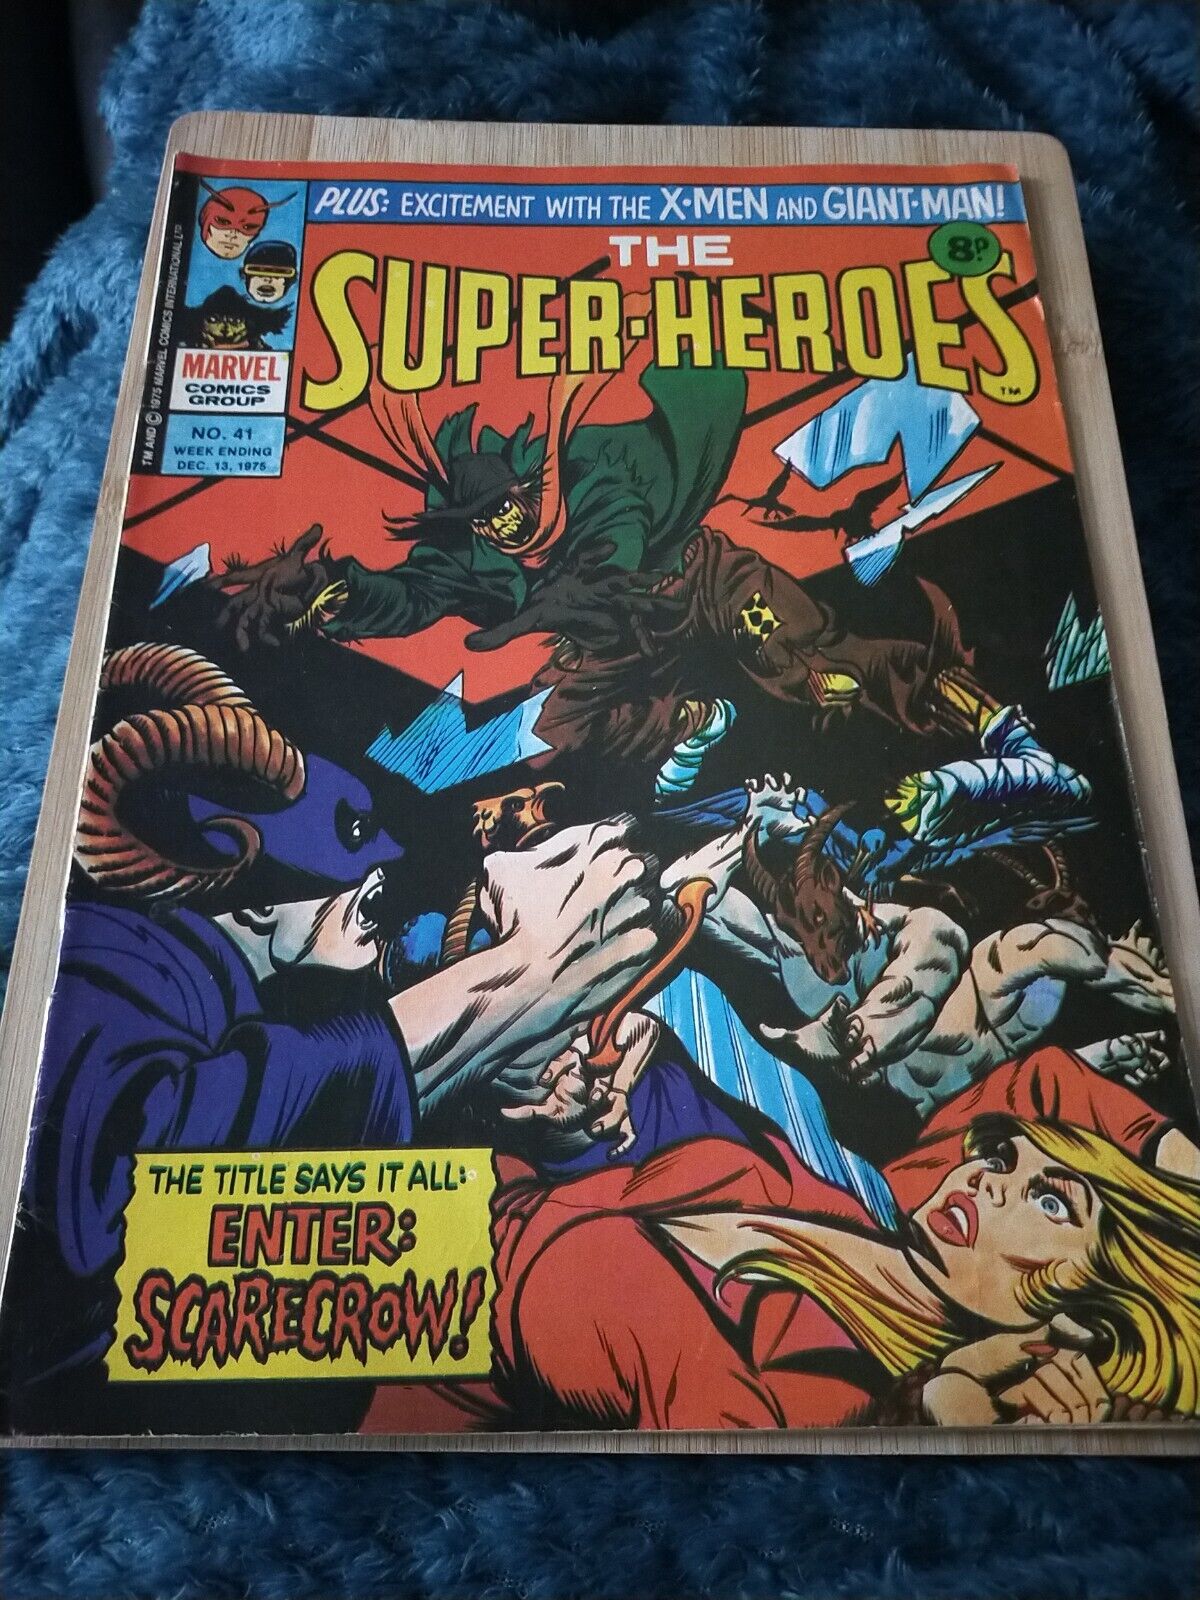 Marvel Comics - The Super-Heroes - No. 41 Dec 13 1975 : Enter: Scarecrow Art